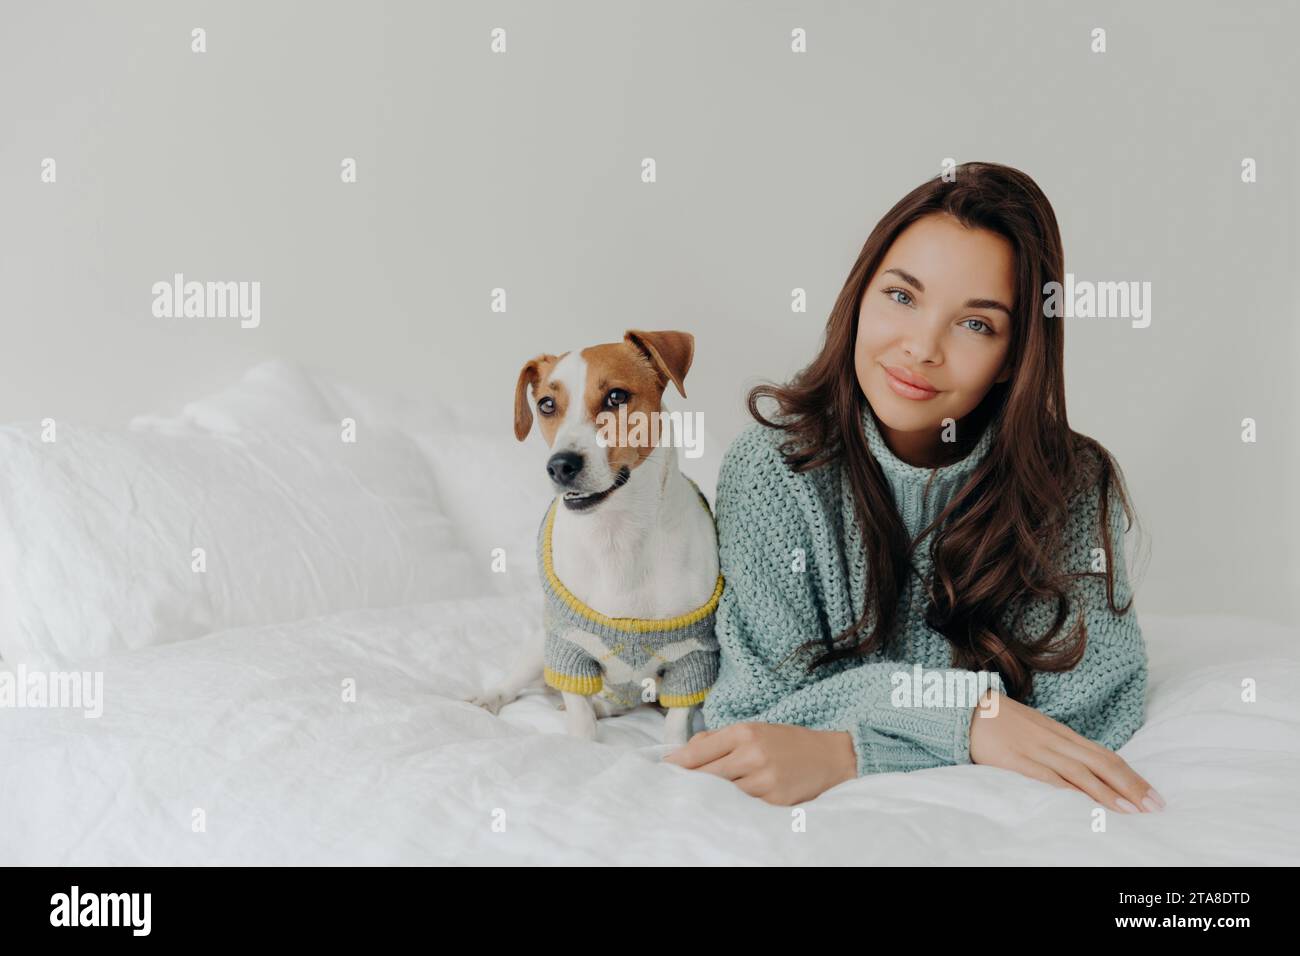 Femme souriante dans un pull confortable partage un moment serein avec son chien sur un lit blanc, exsudant chaleur et confort Banque D'Images